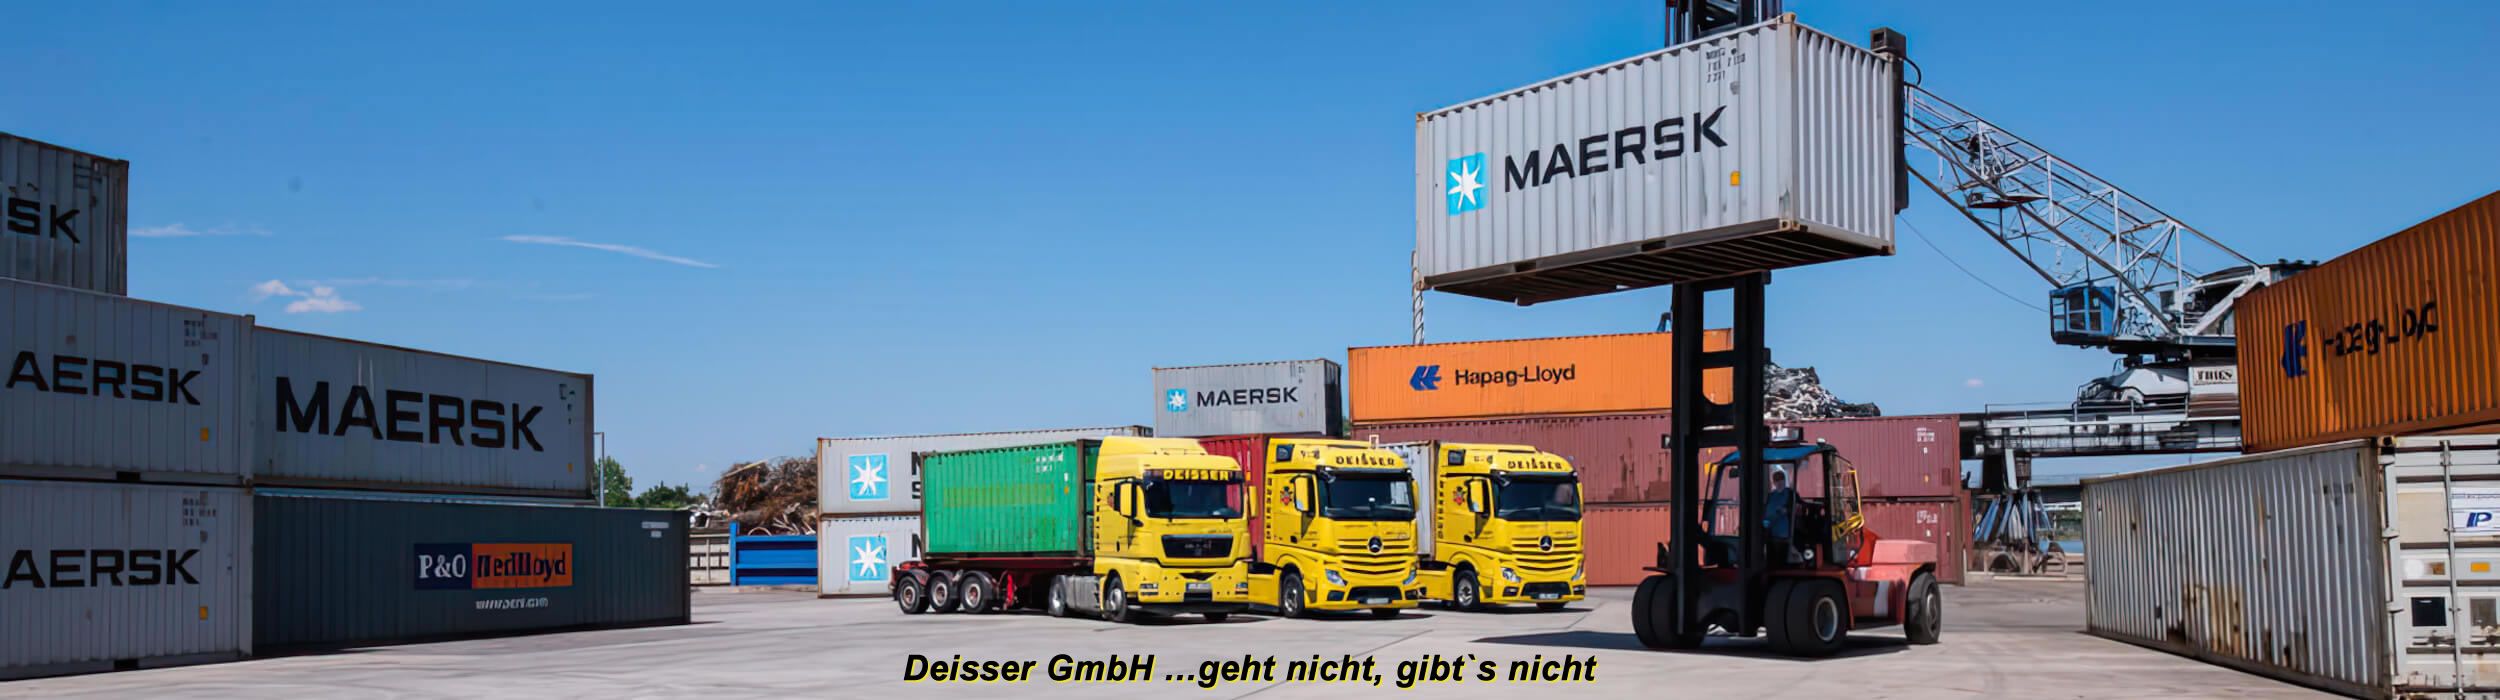 Deisser GmbH / Transportlogistik Seecontainer / Bilder